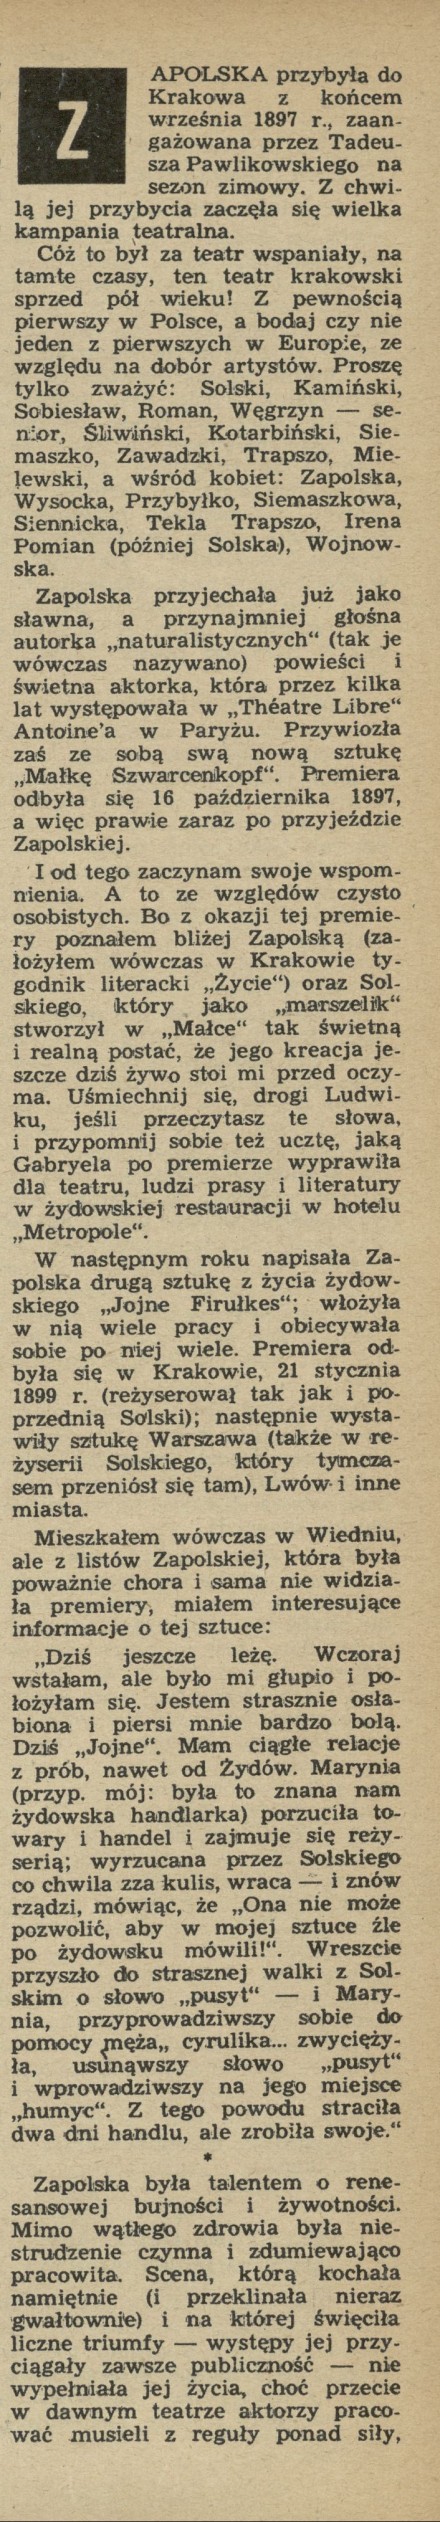 Wspomnienia i plotki literackie * Zapolska i Przybyszewski